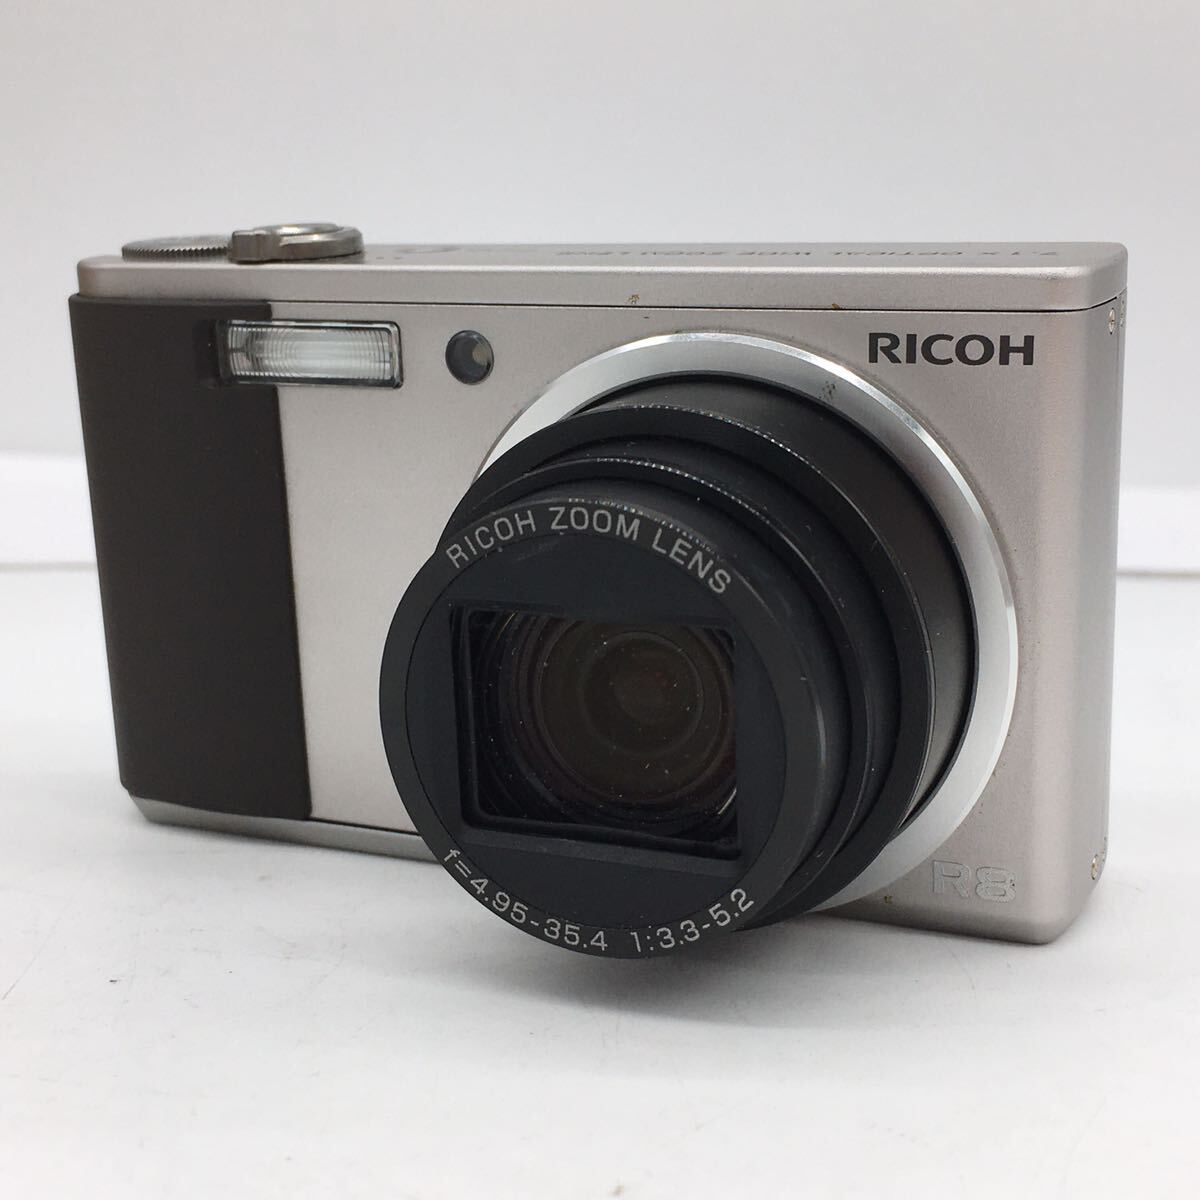 RICHO Ricoh R8 серебряный компактный цифровой фотоаппарат цифровая камера темно синий teji инструкция * зарядное устройство * аккумулятор * специальный чехол * оригинальная коробка приложен рабочее состояние подтверждено 